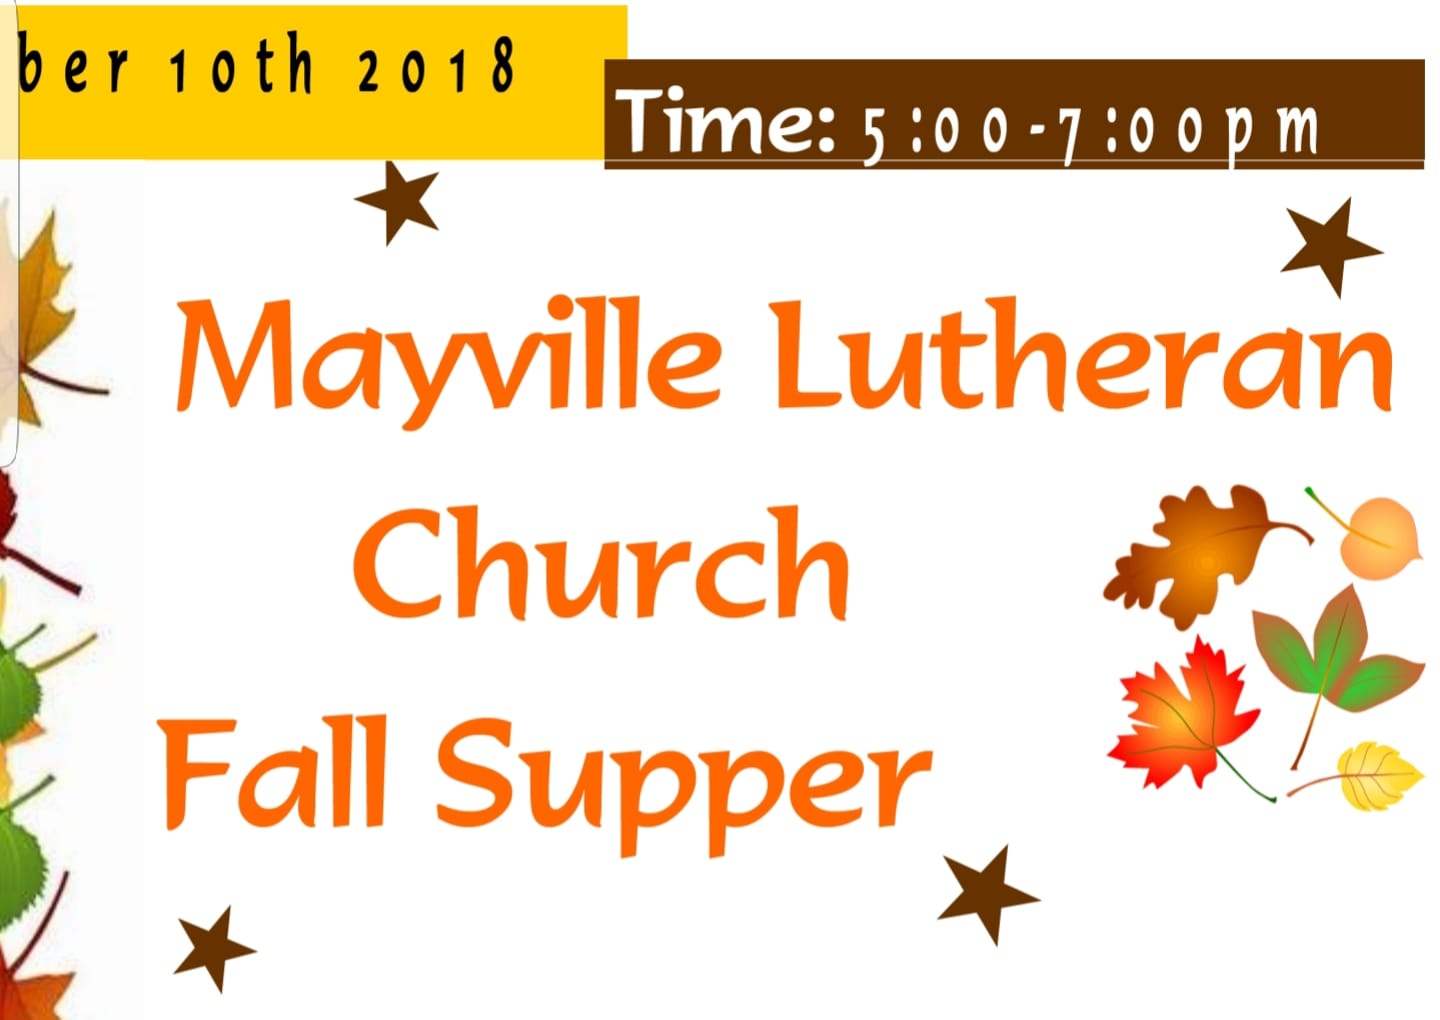 Mayville Lutheran Church Fall Supper @ Mayville Lutheran Church